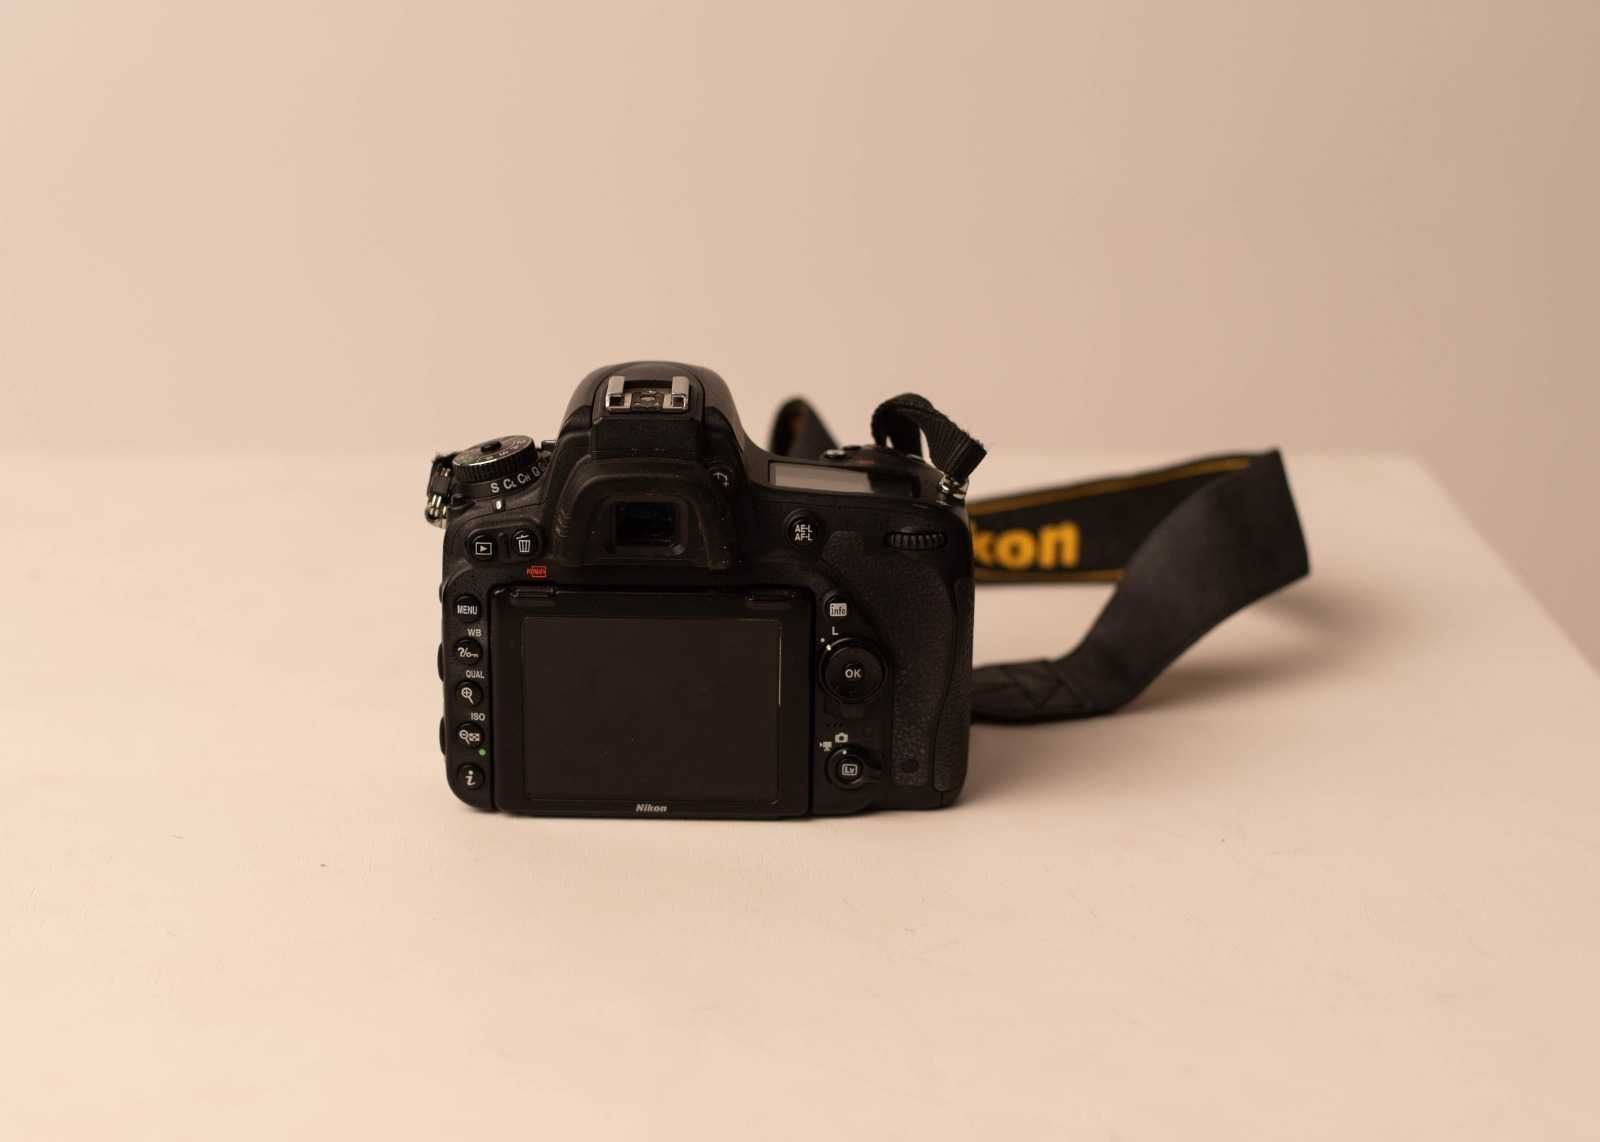 Body Nikon D750 + Obiektyw Nikkor 24-120 mm + Obiektyw Nikkor 35 mm